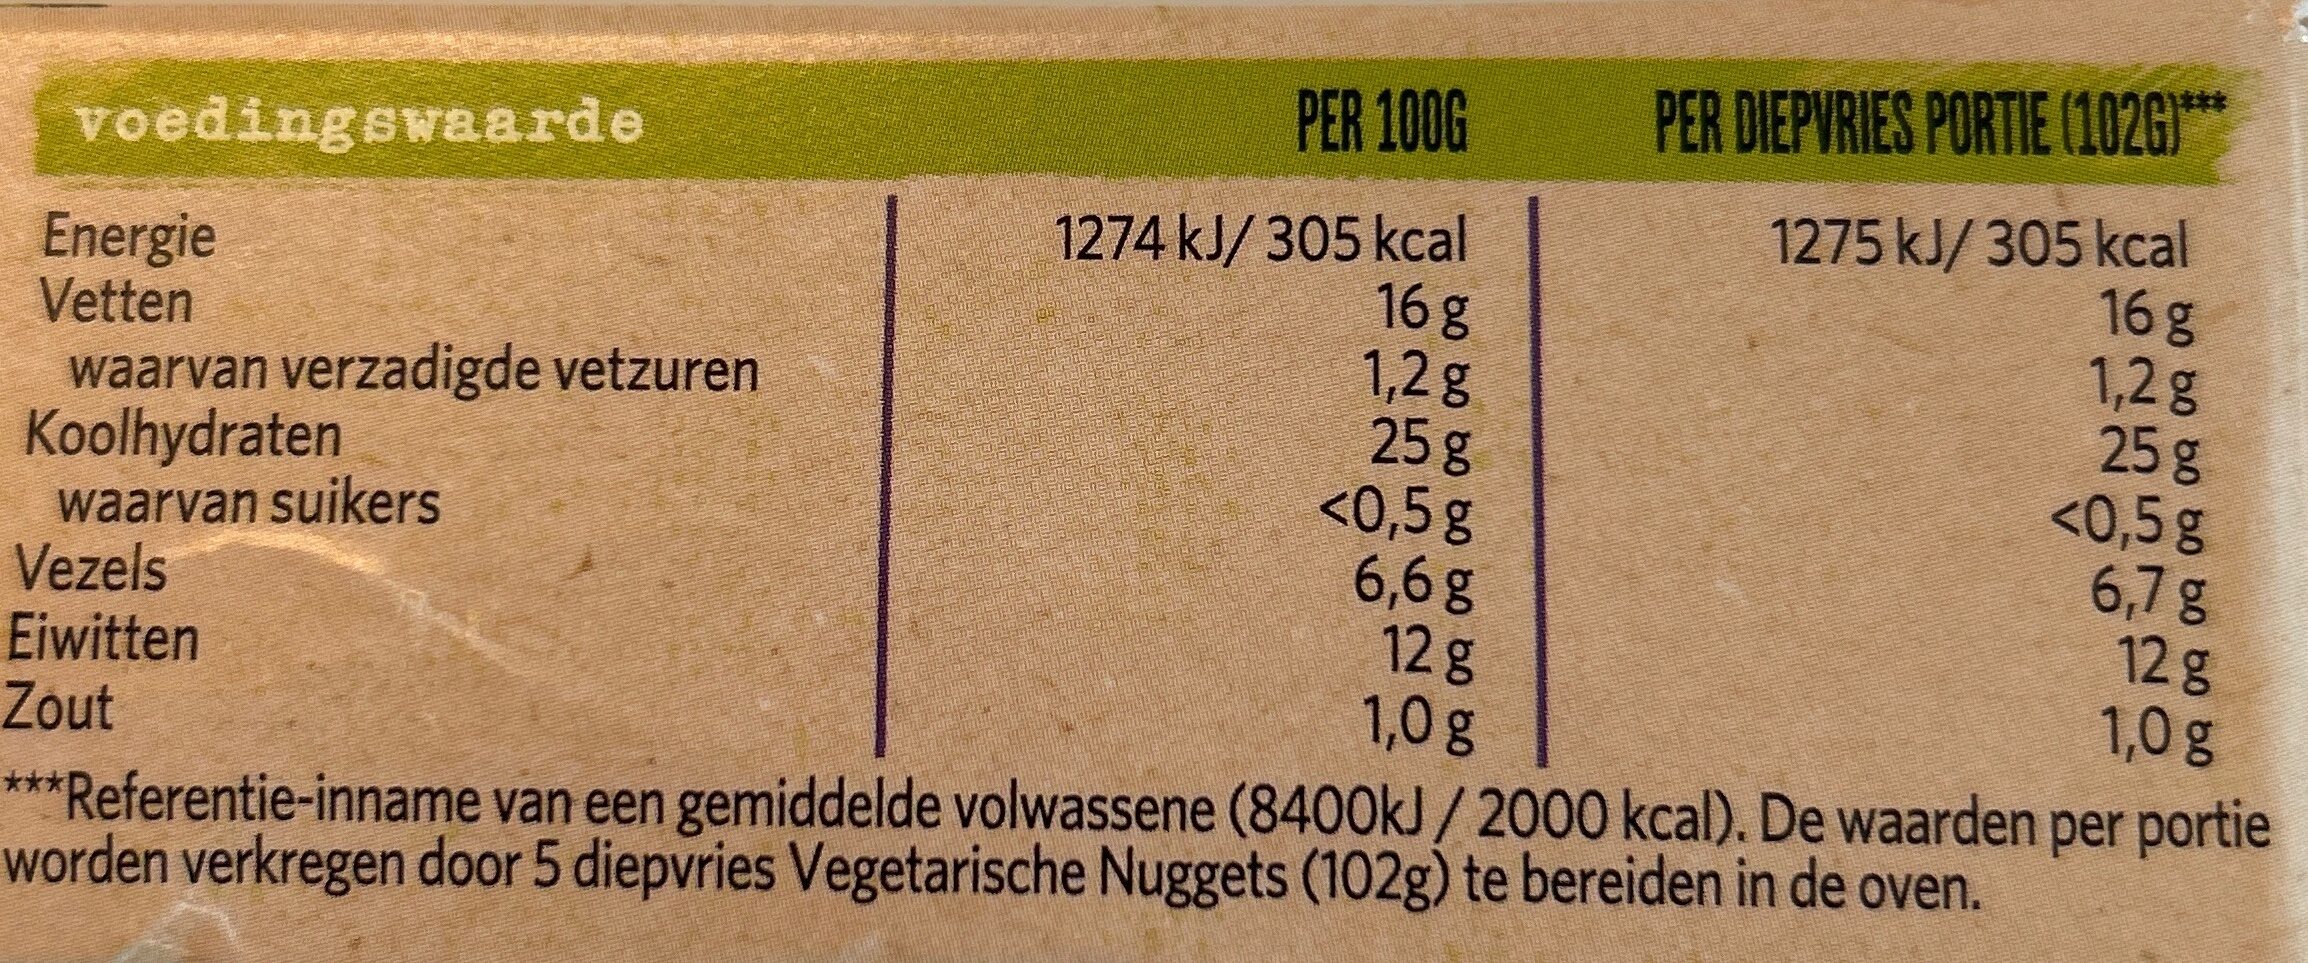 Vegetarische nuggets - Información nutricional - nl